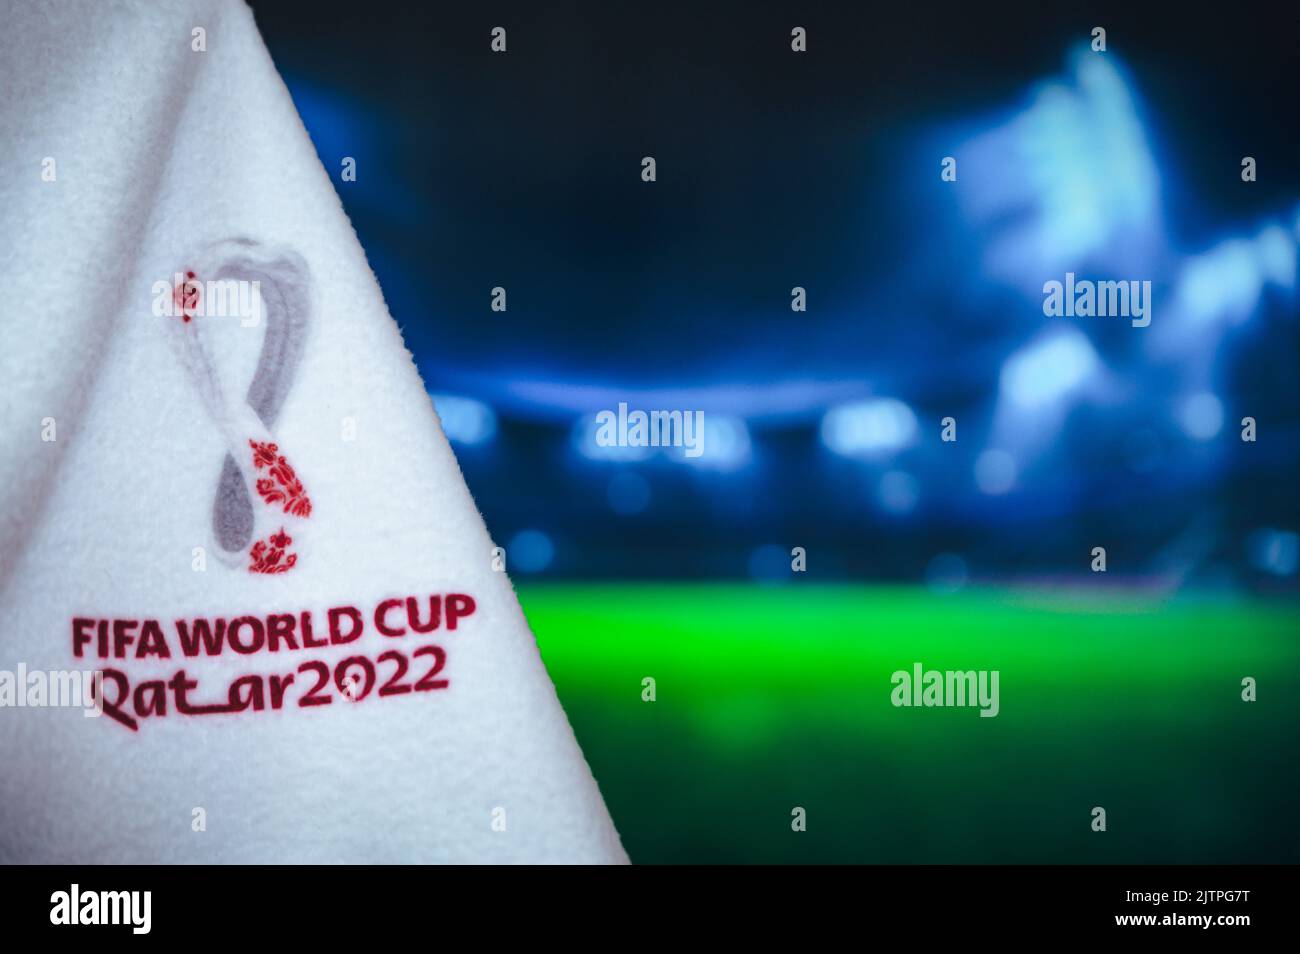 DOHA, KATAR, 30. AUGUST 2022: Fußballstadion in der Nacht. Fußball-Hintergrund für die FIFA Fußball-Weltmeisterschaft 2022. Black Edit Space, Wallpaper für Katar 2022 Stockfoto